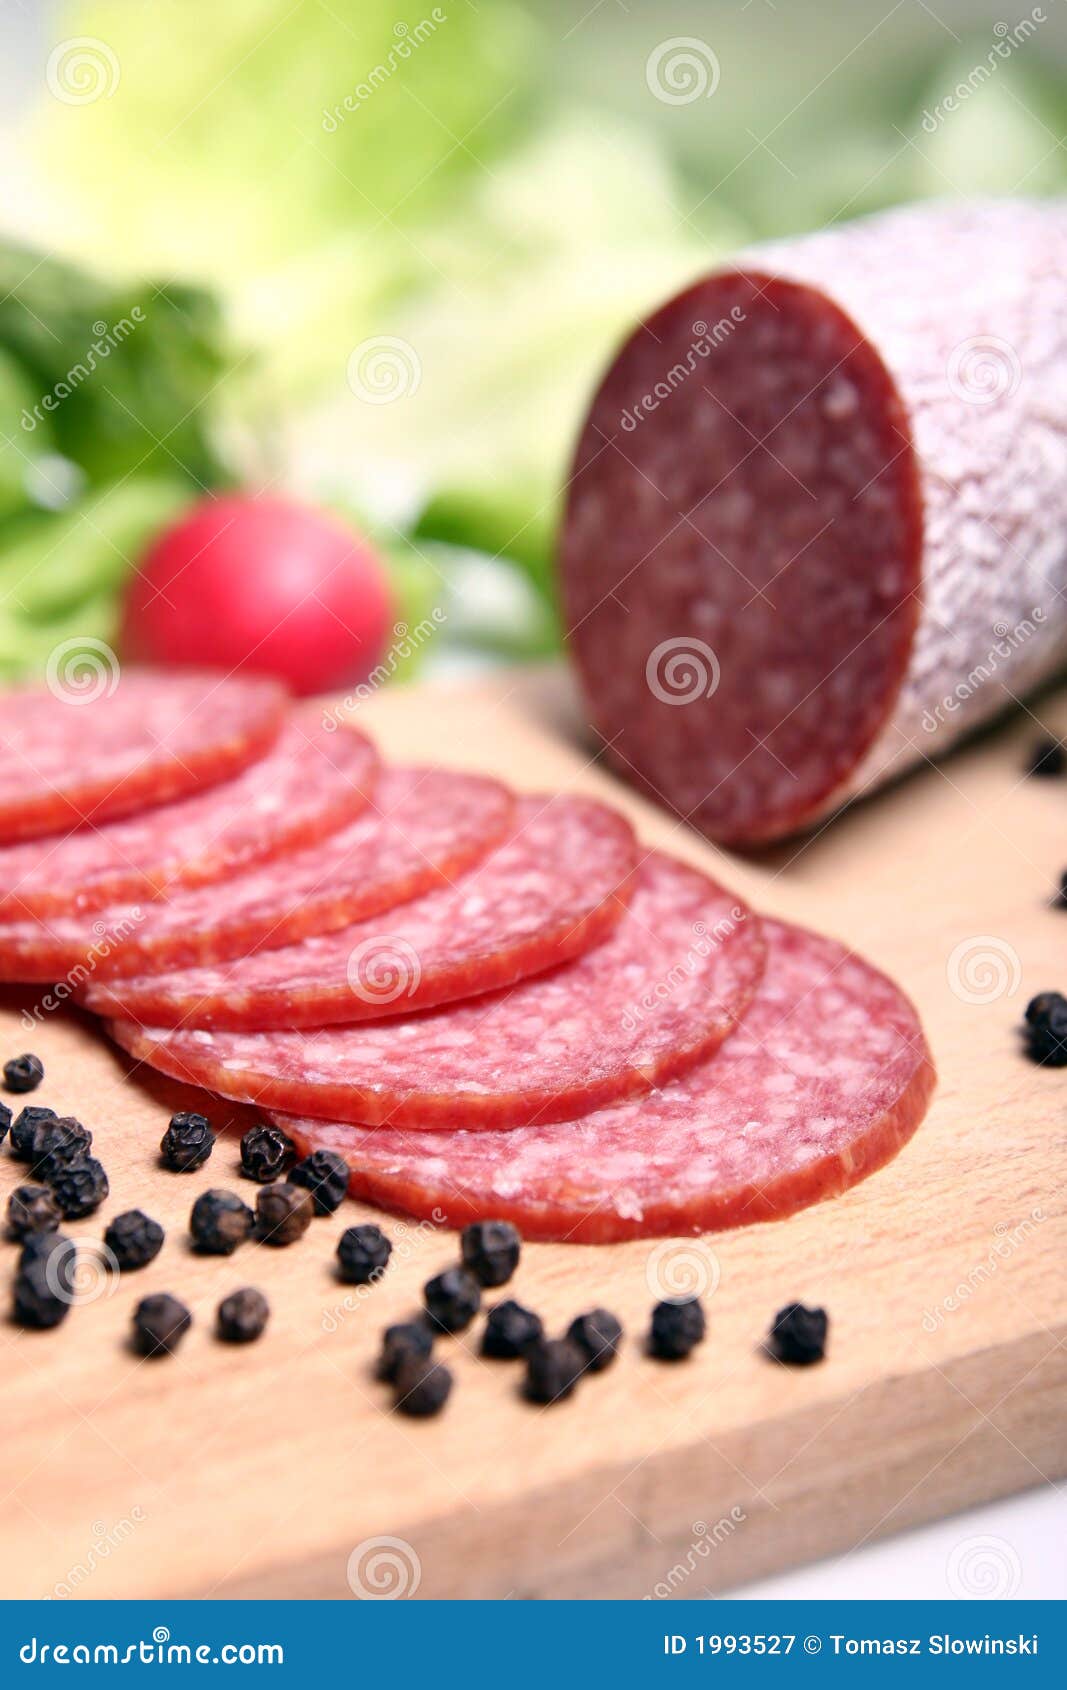 salami sausage